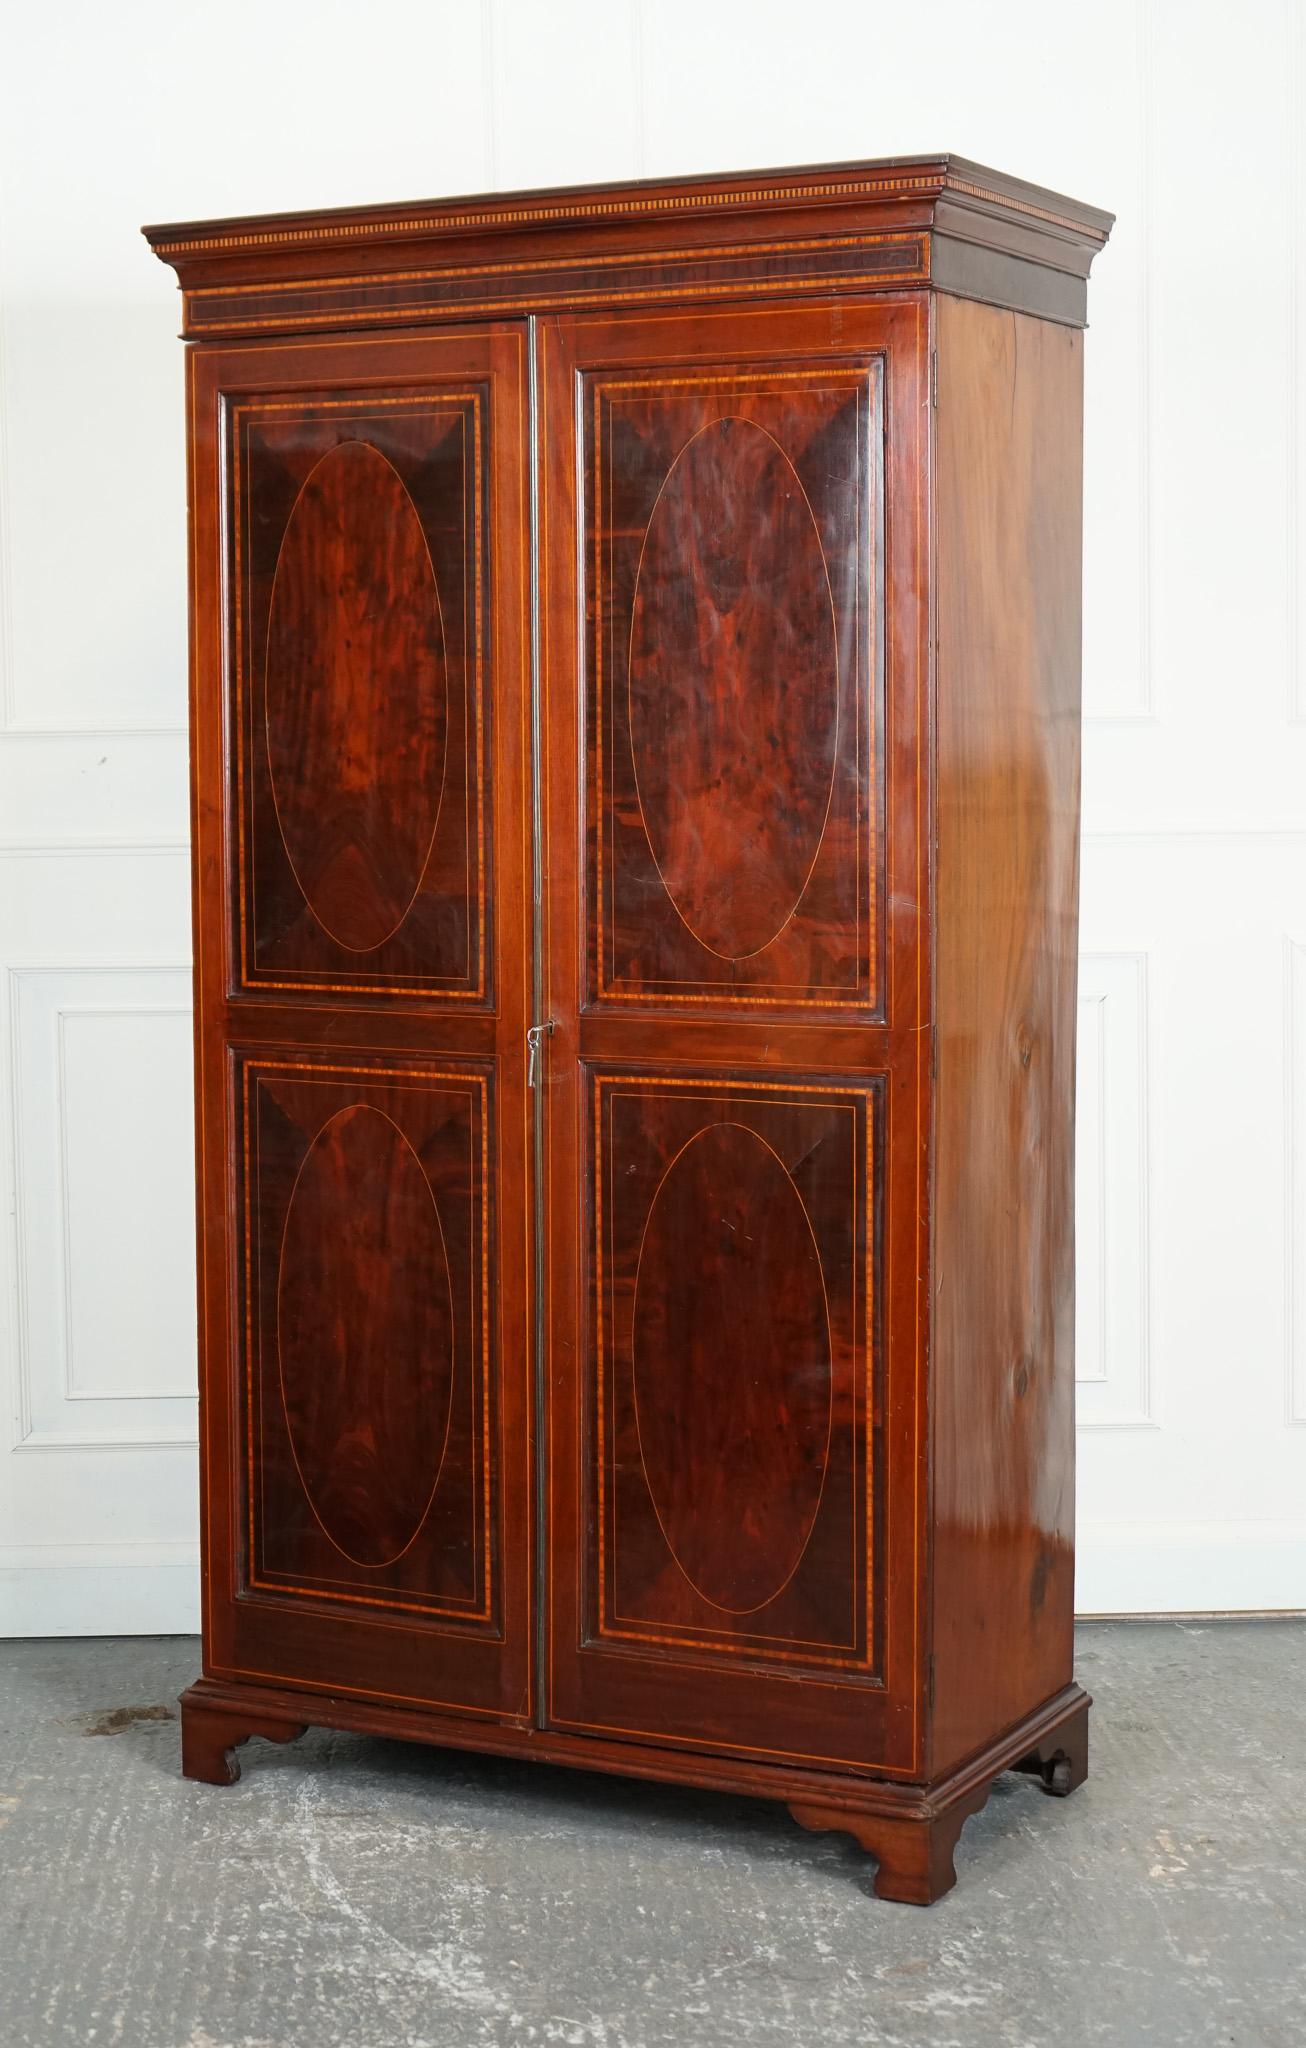 
Nous sommes ravis de proposer à la vente cette double armoire en bois dur flammé de style Sheraton de l'époque édouardienne.

Une armoire double en bois dur flammé de style Sheraton est un meuble luxueux et élégant de l'époque édouardienne.